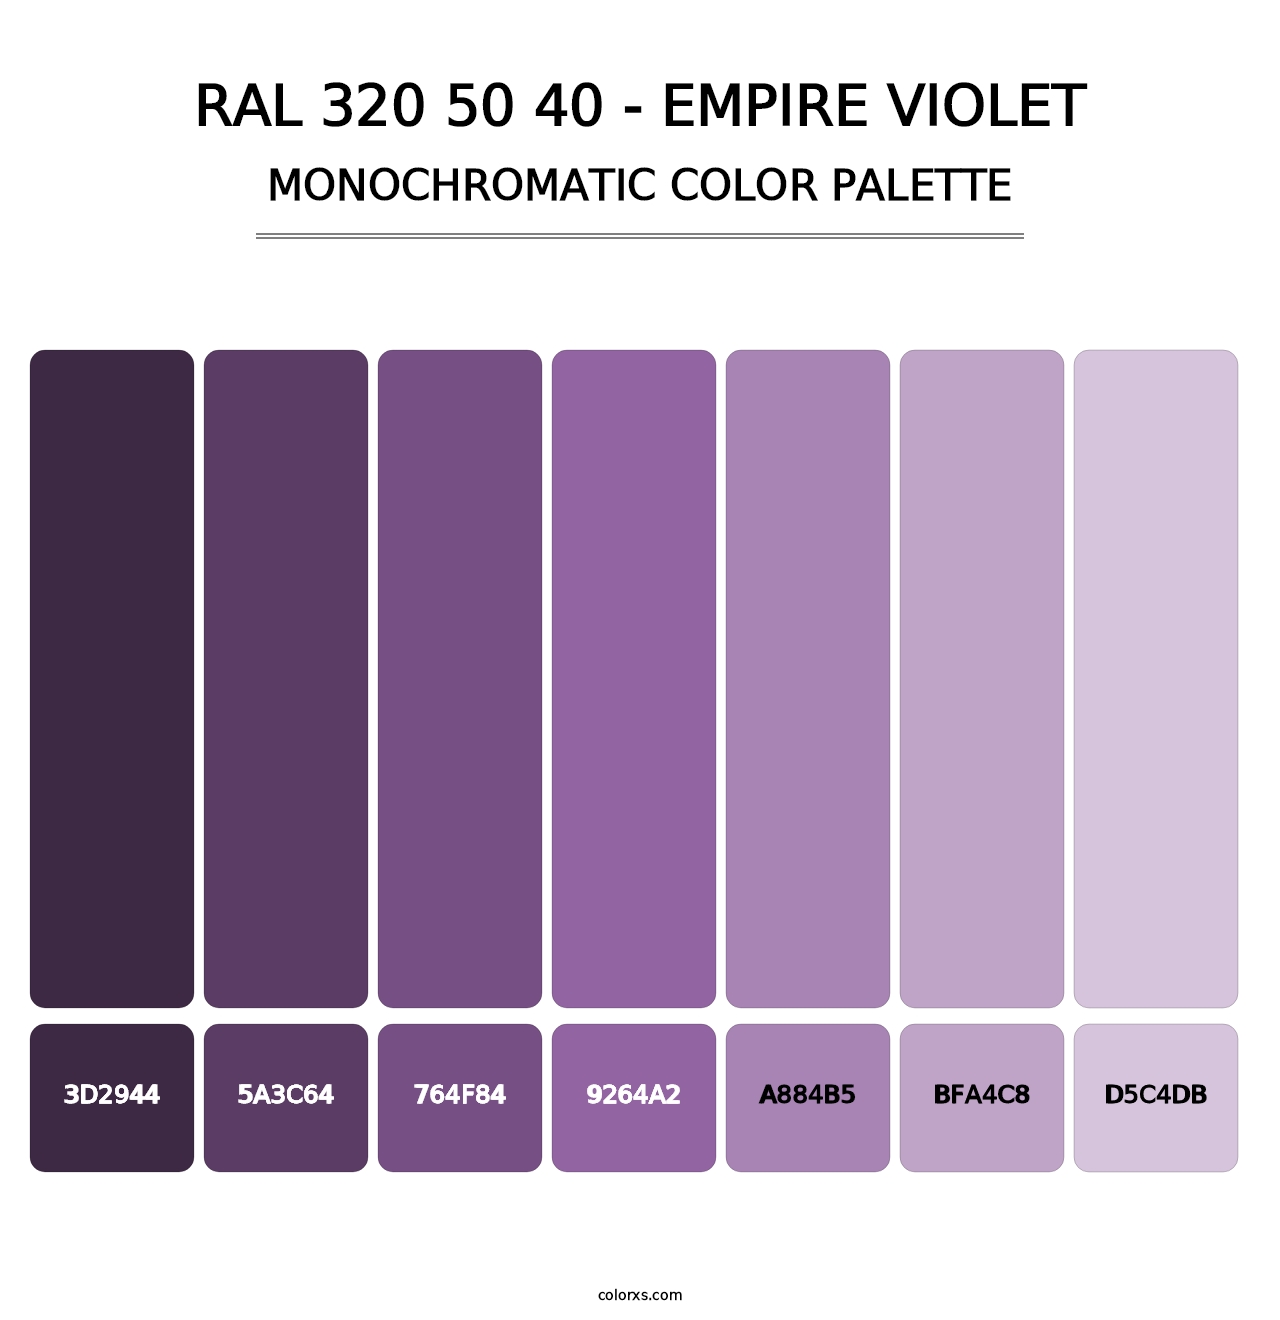 RAL 320 50 40 - Empire Violet - Monochromatic Color Palette